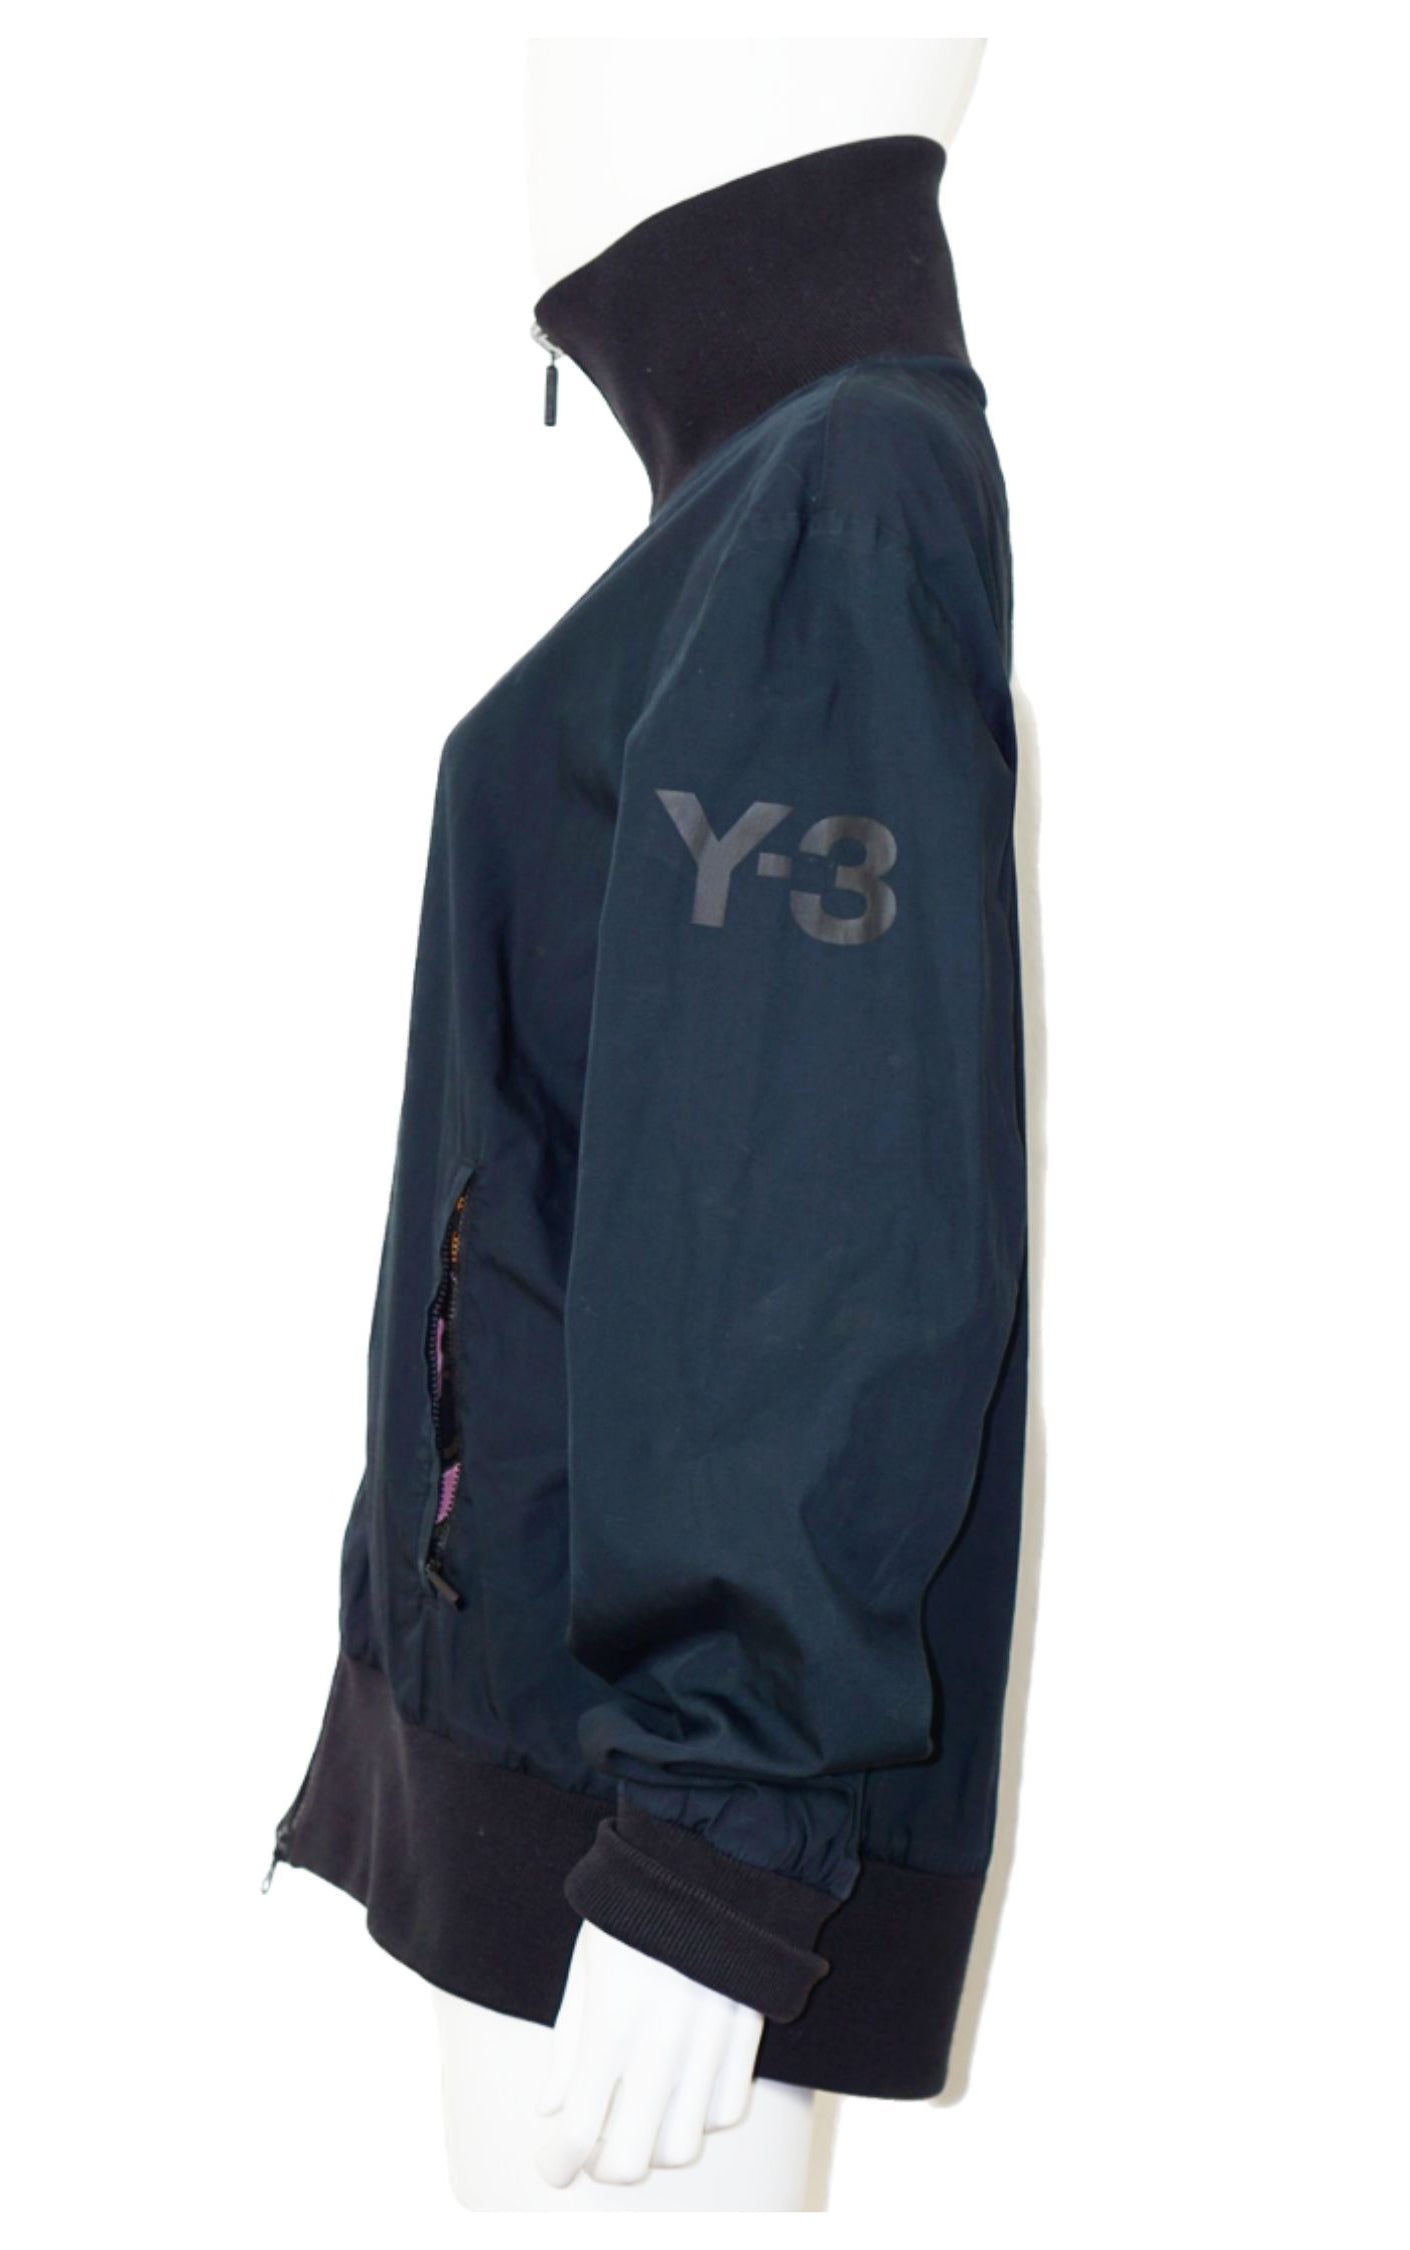 Y-3 Yohji Yamamoto Reversible Zip Track Jacket resellum